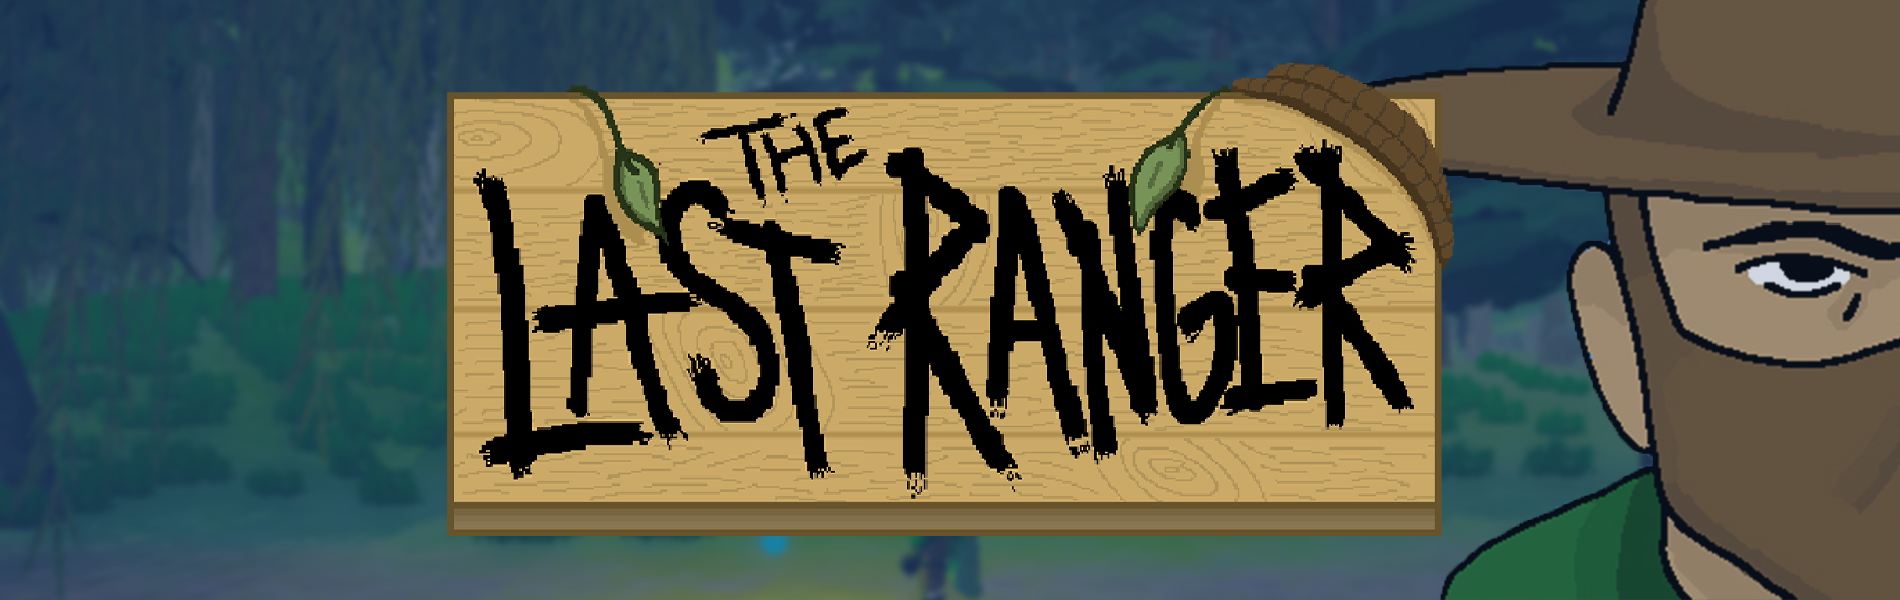 Last Ranger